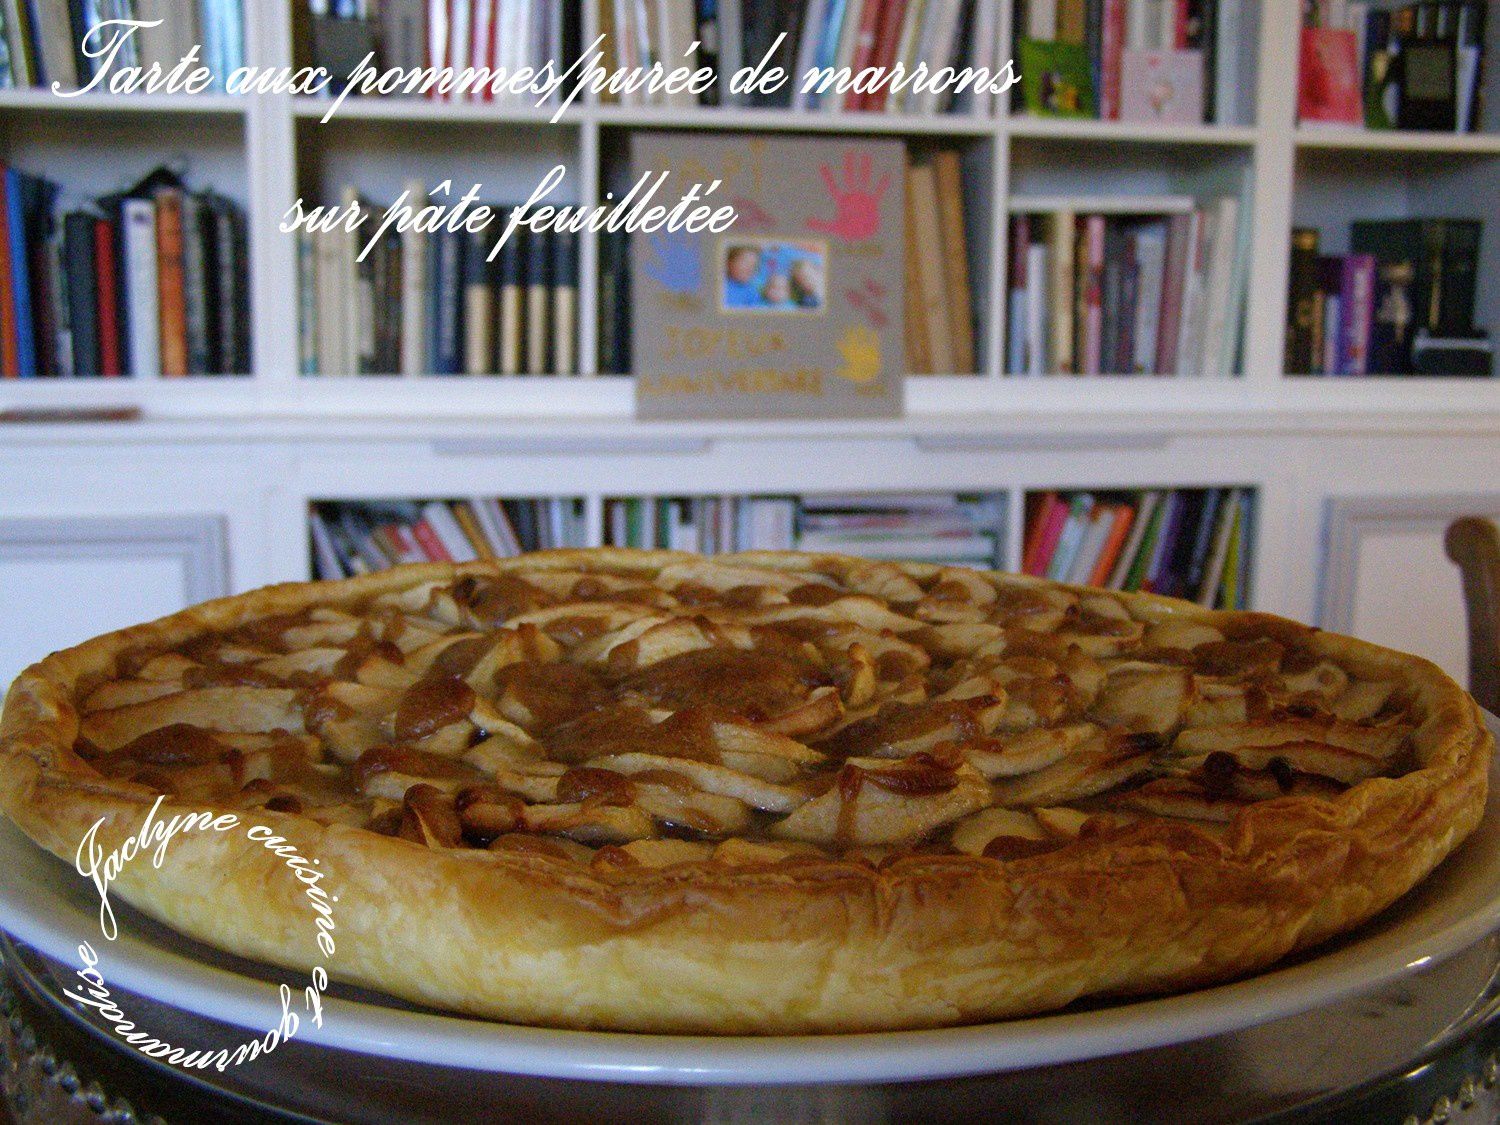 Tarte aux pommes sur pâte feuilletée, crème de marrons Jaclyne www.cuisineetgourmandise.fr